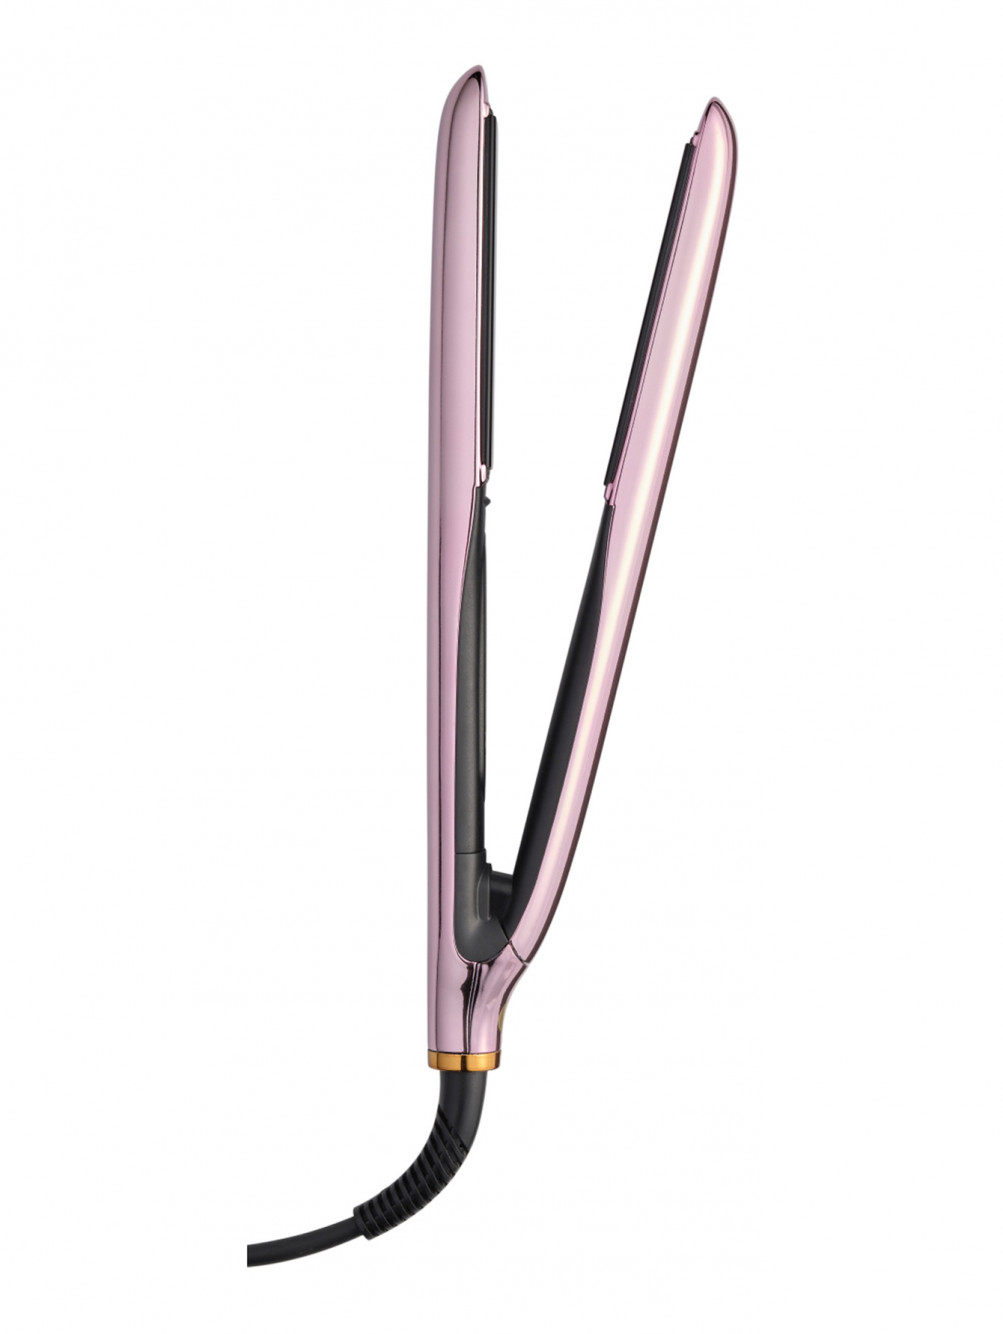 Стайлер для выпрямления волос True Divinity MK2 Pink Champagne - Общий вид